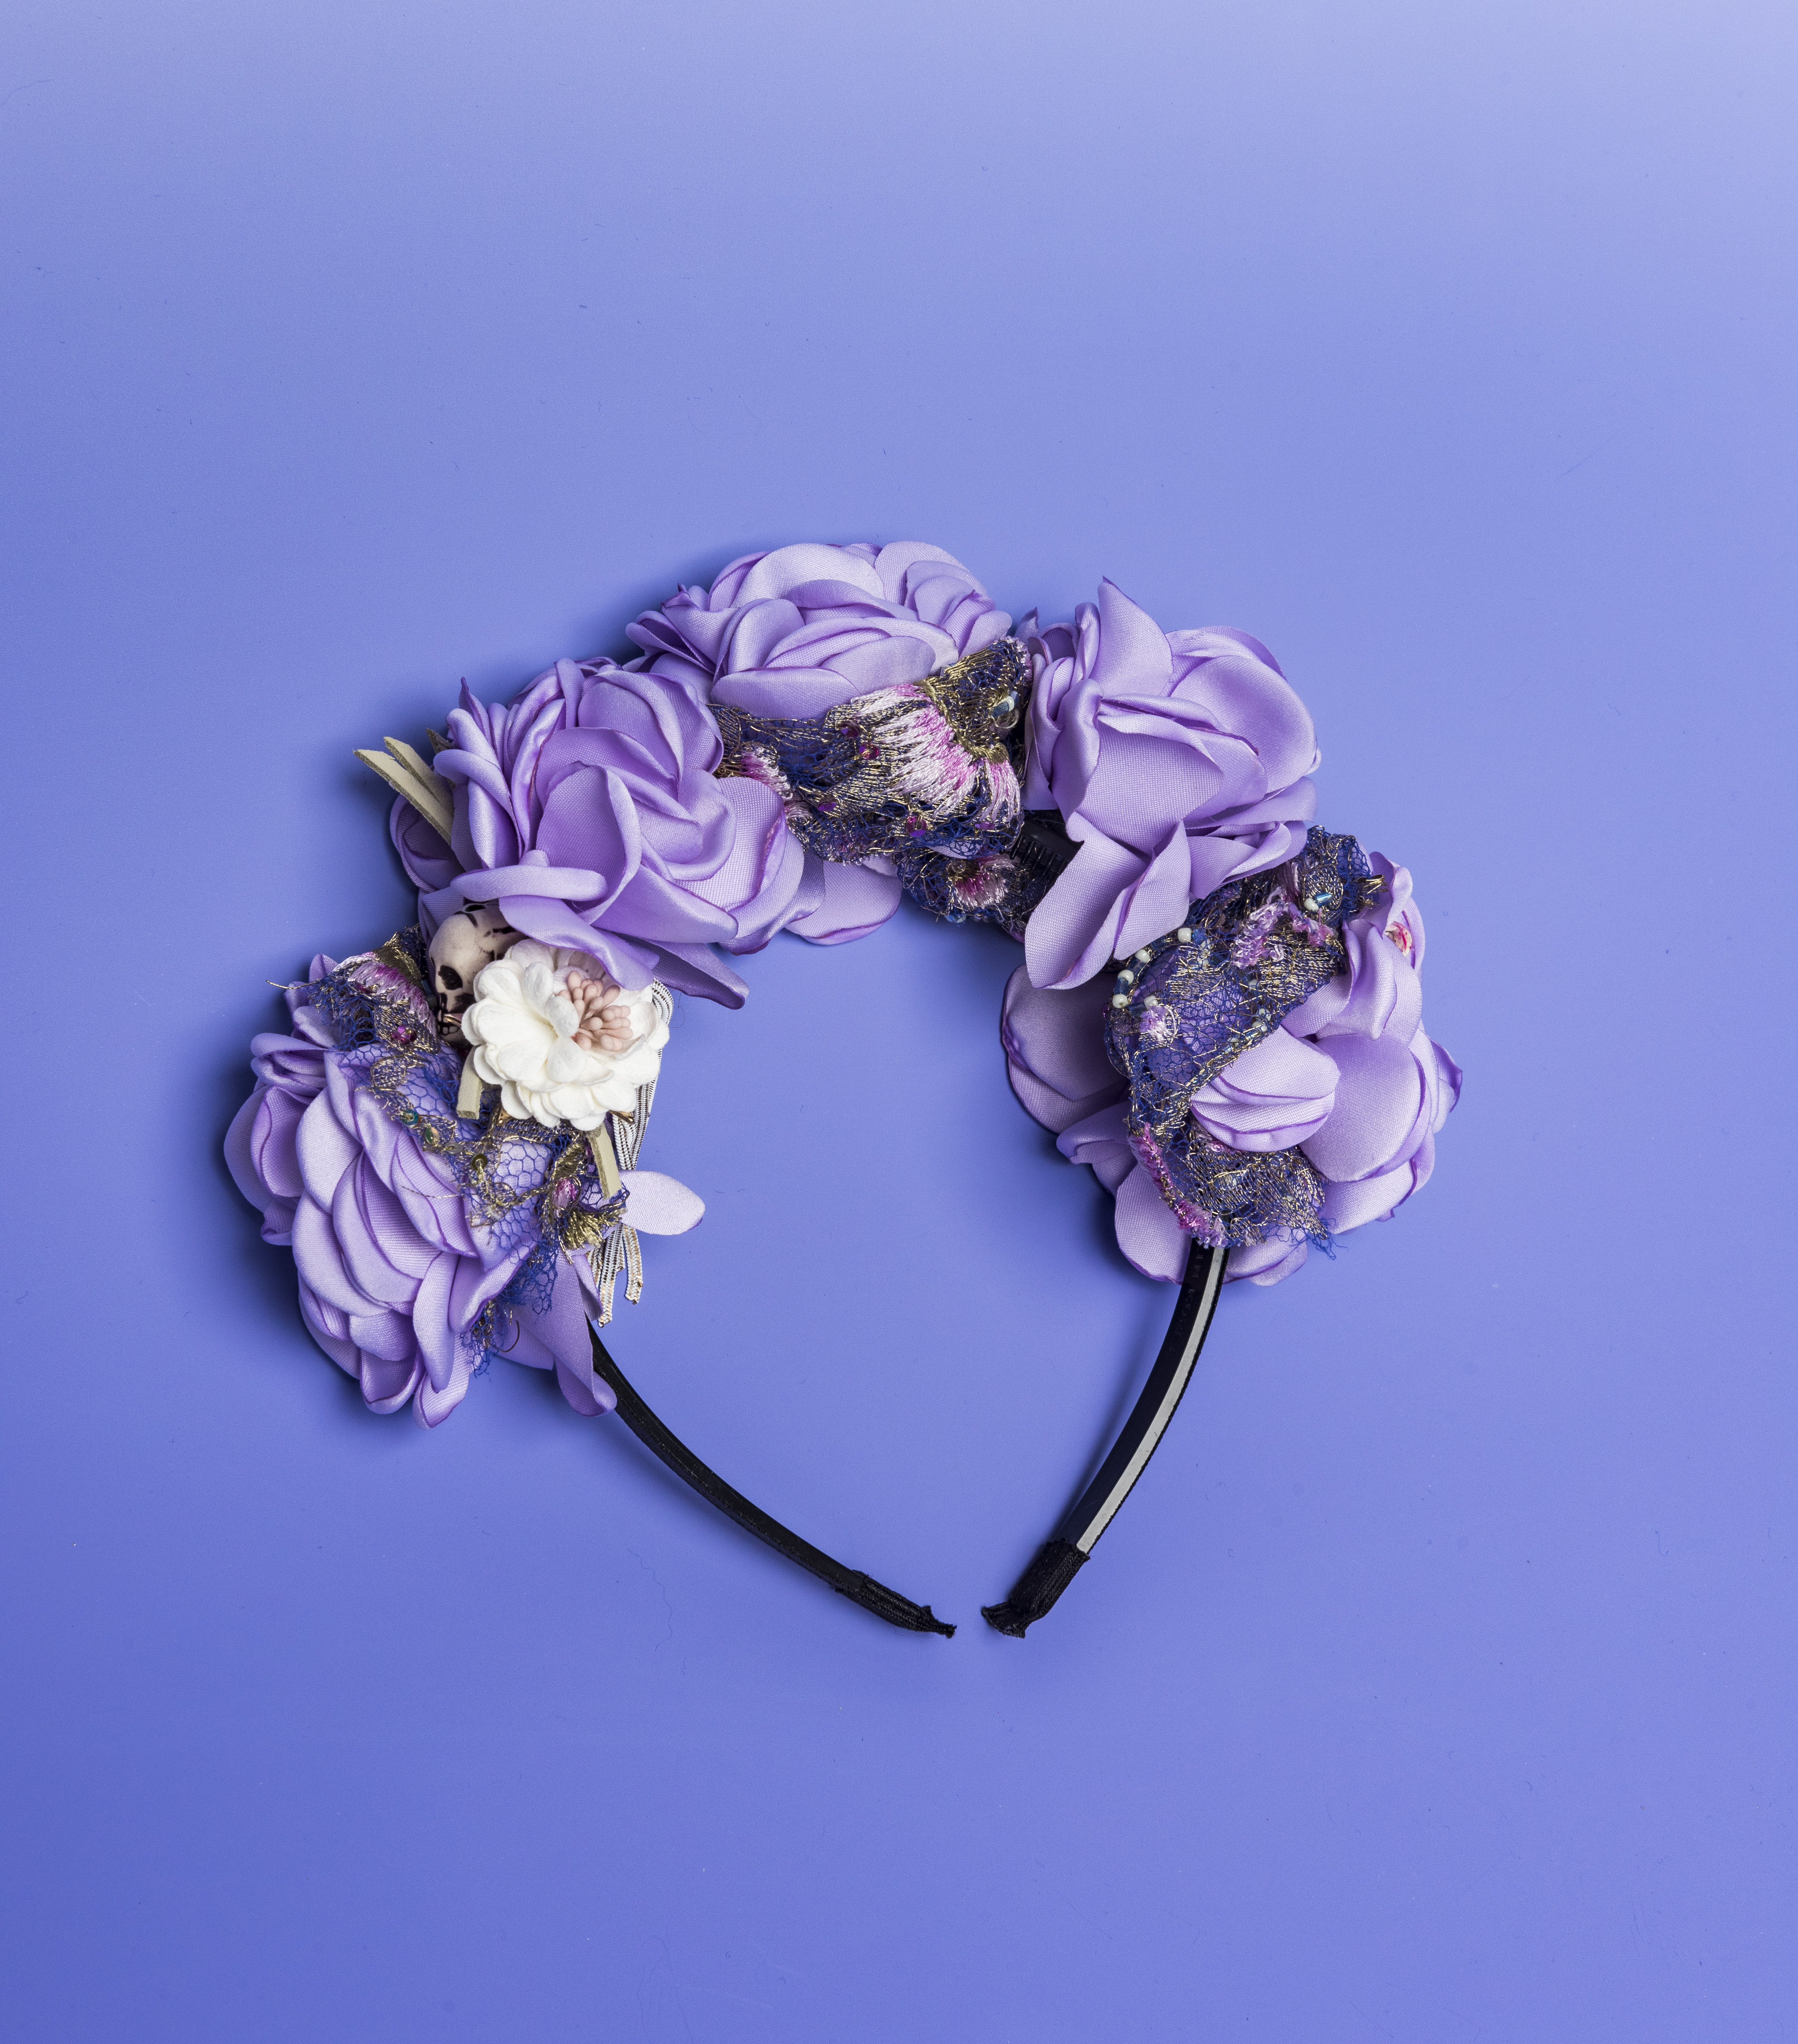 Headband Flowers of Frida and calavera